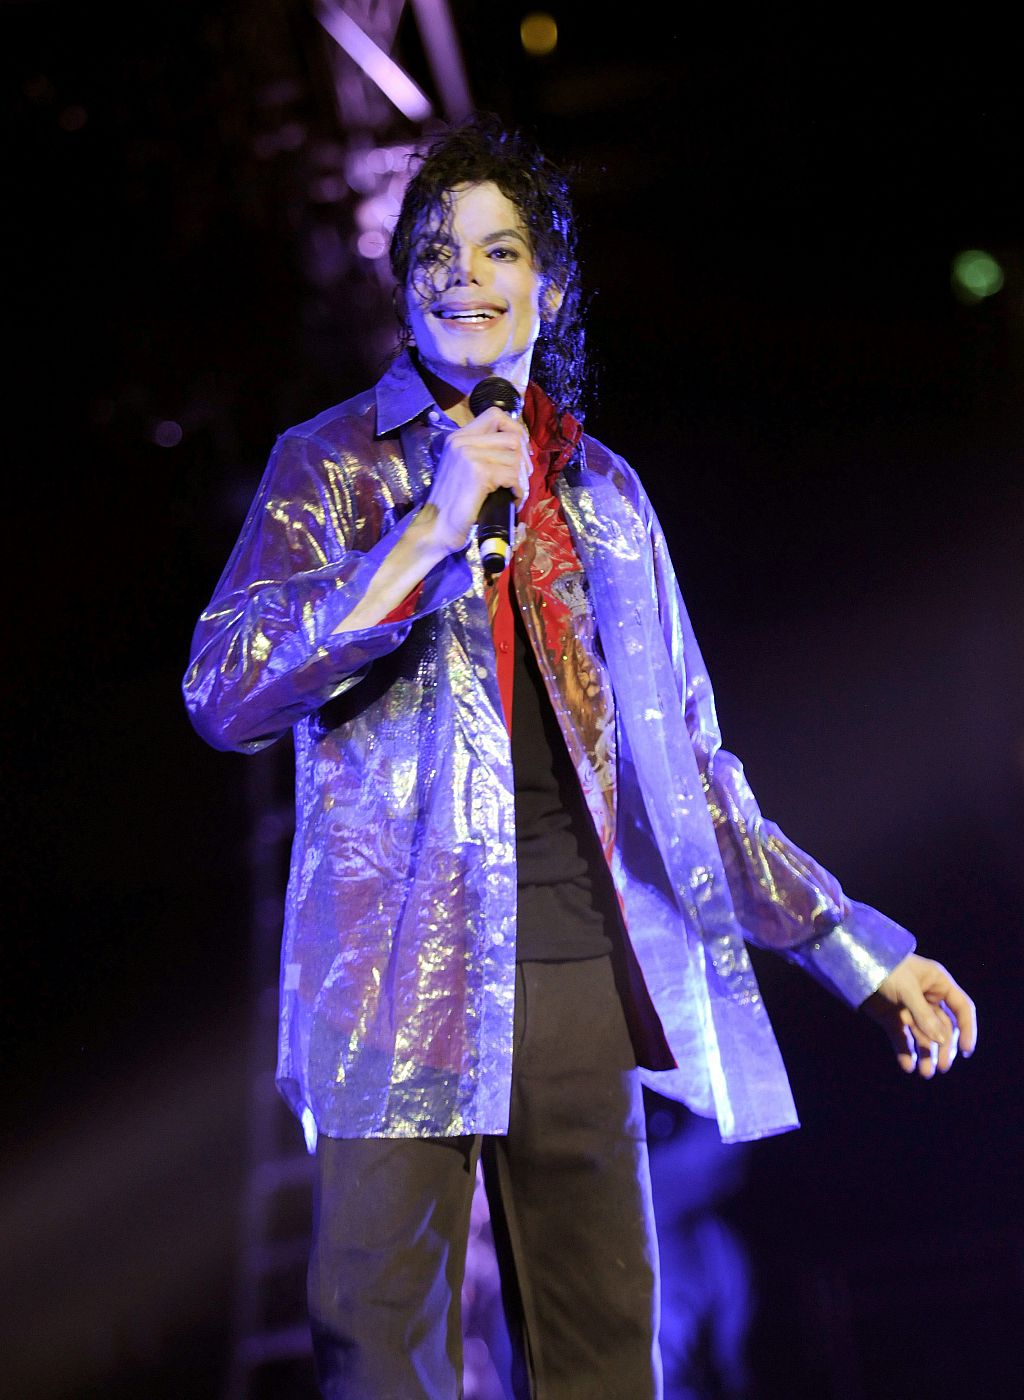 Esta imagen fue tomada sólo dos días antes de que Michael Jackson falleciera, durante el último ensayo para su gira en Londres.